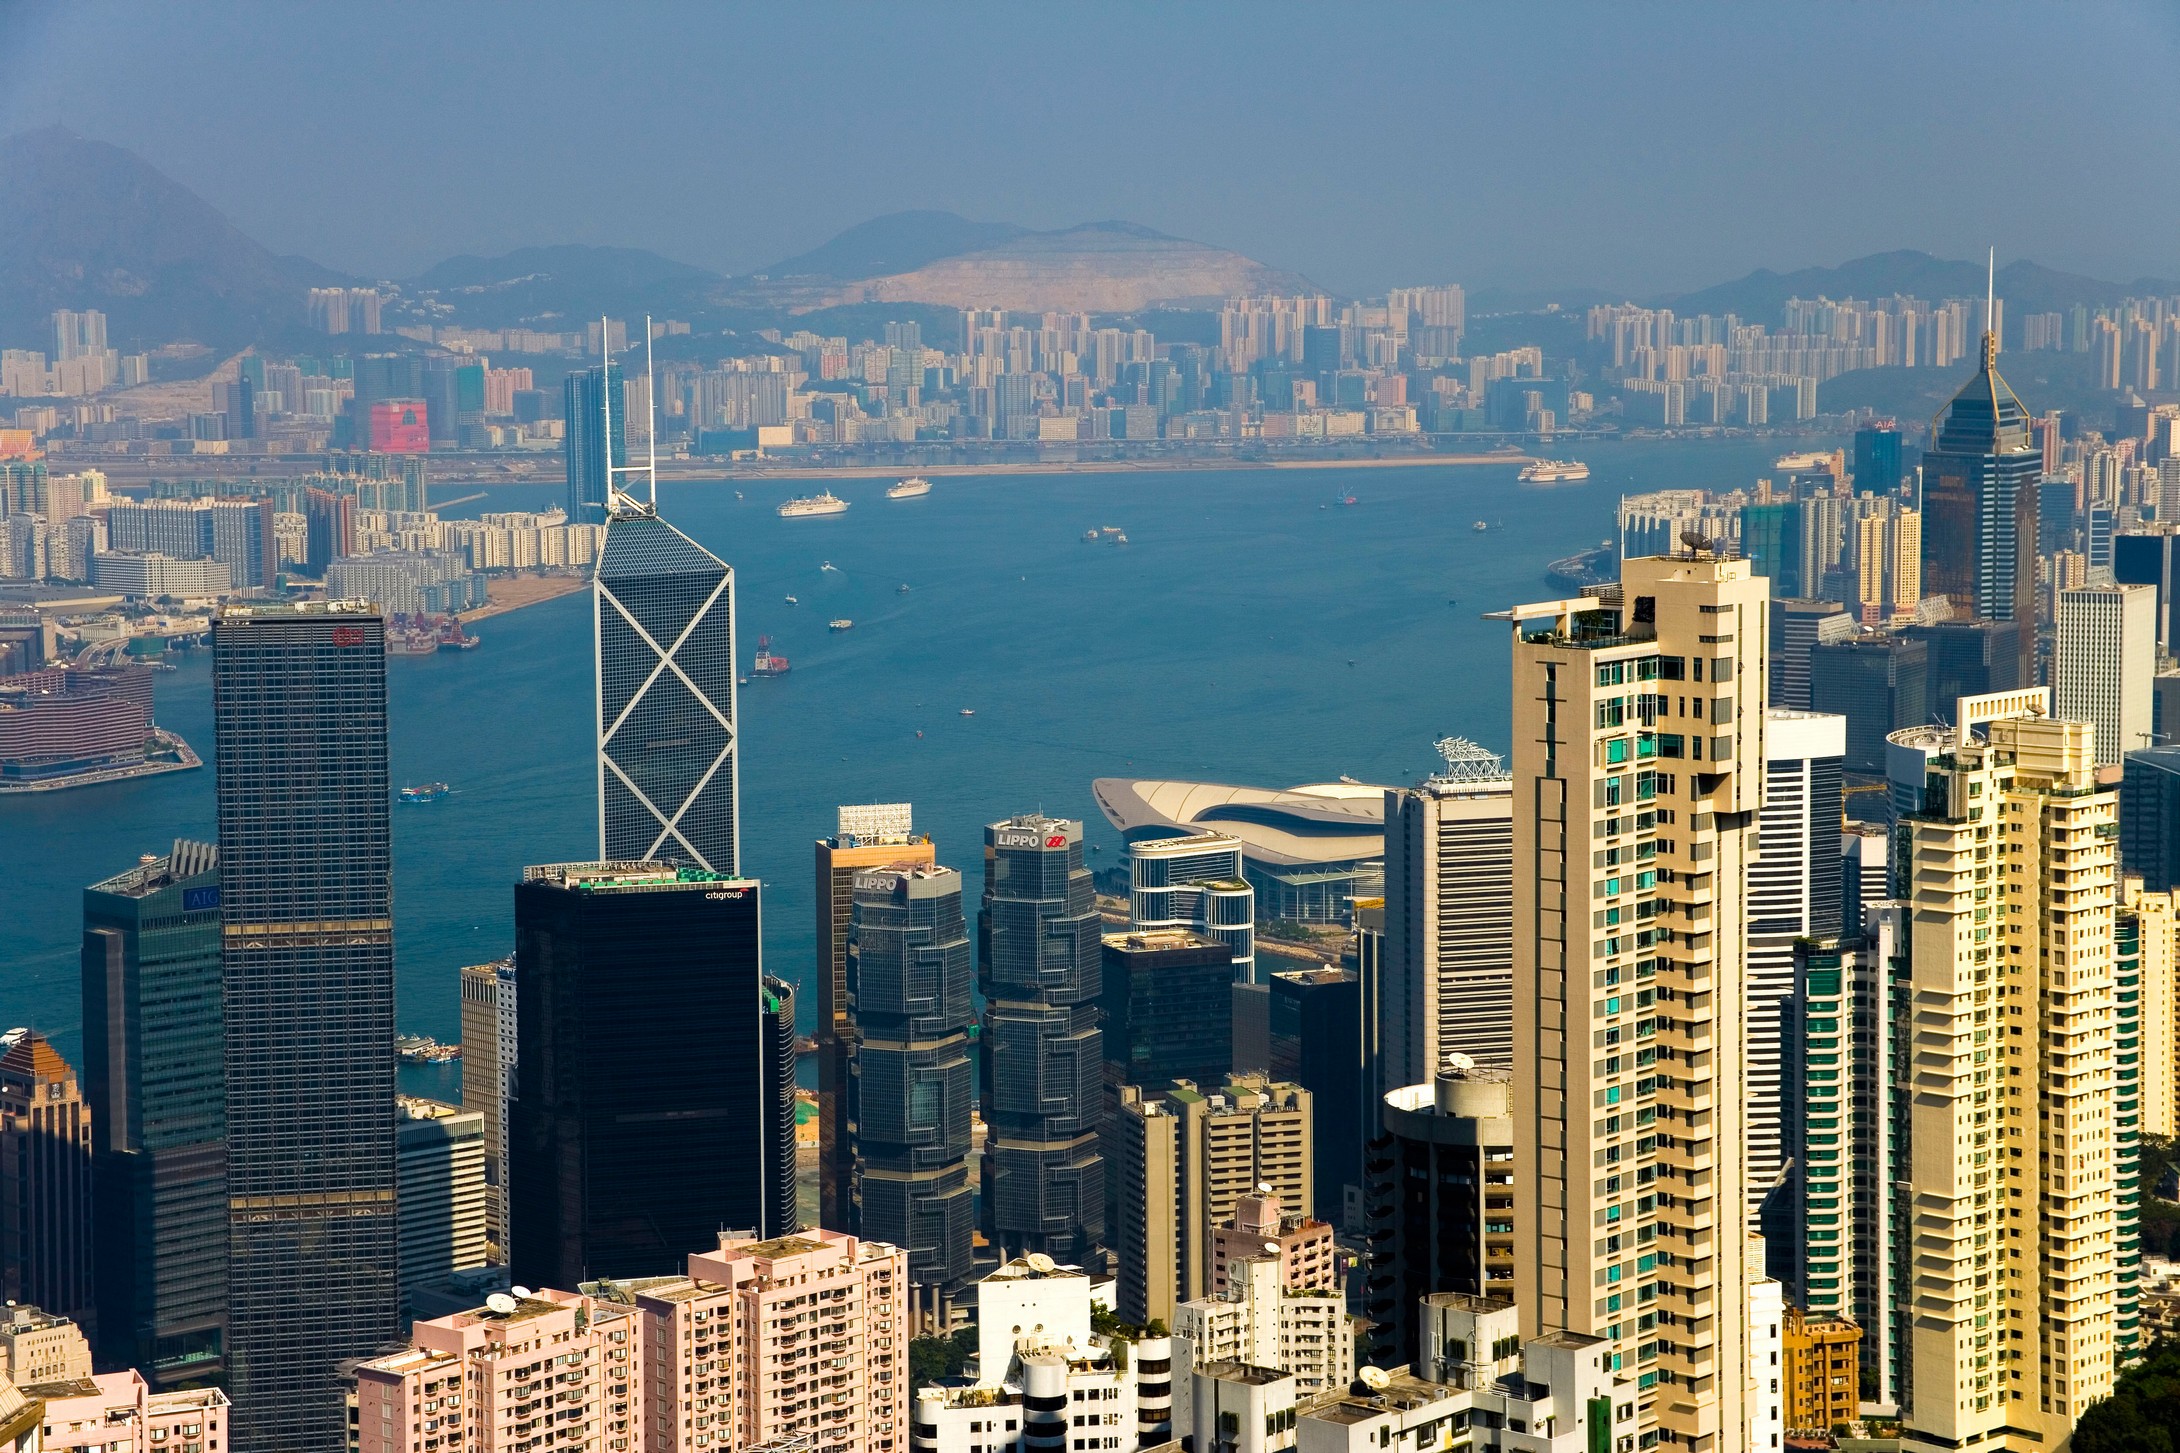 Hong Kong Cityscape